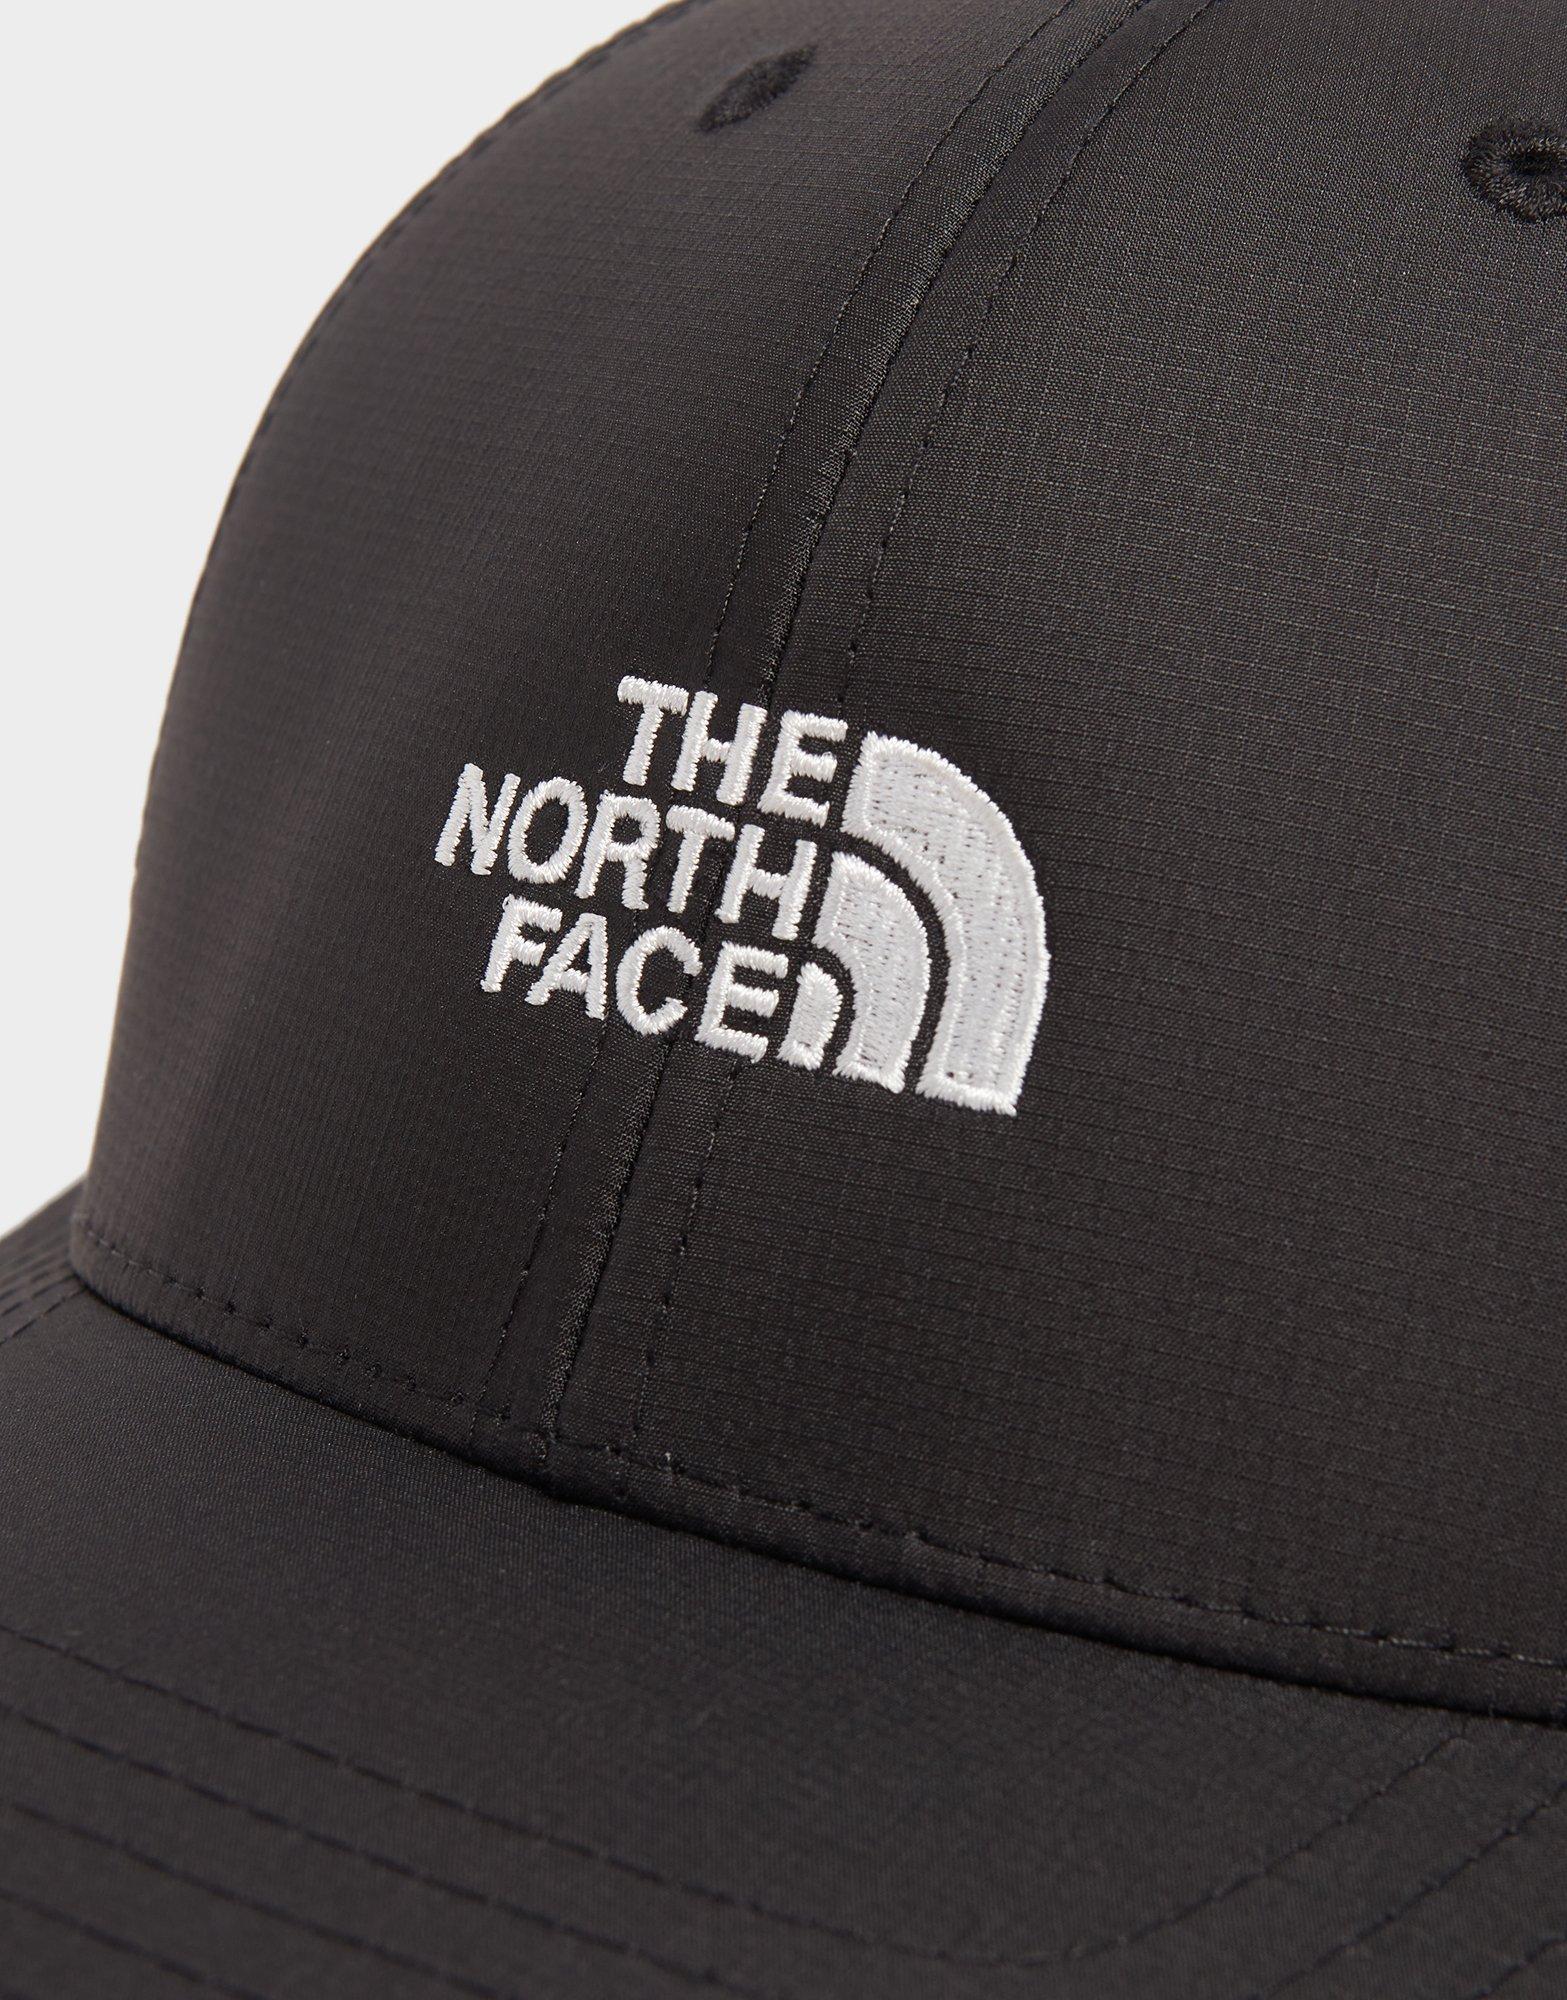 the north face 66 classic cap